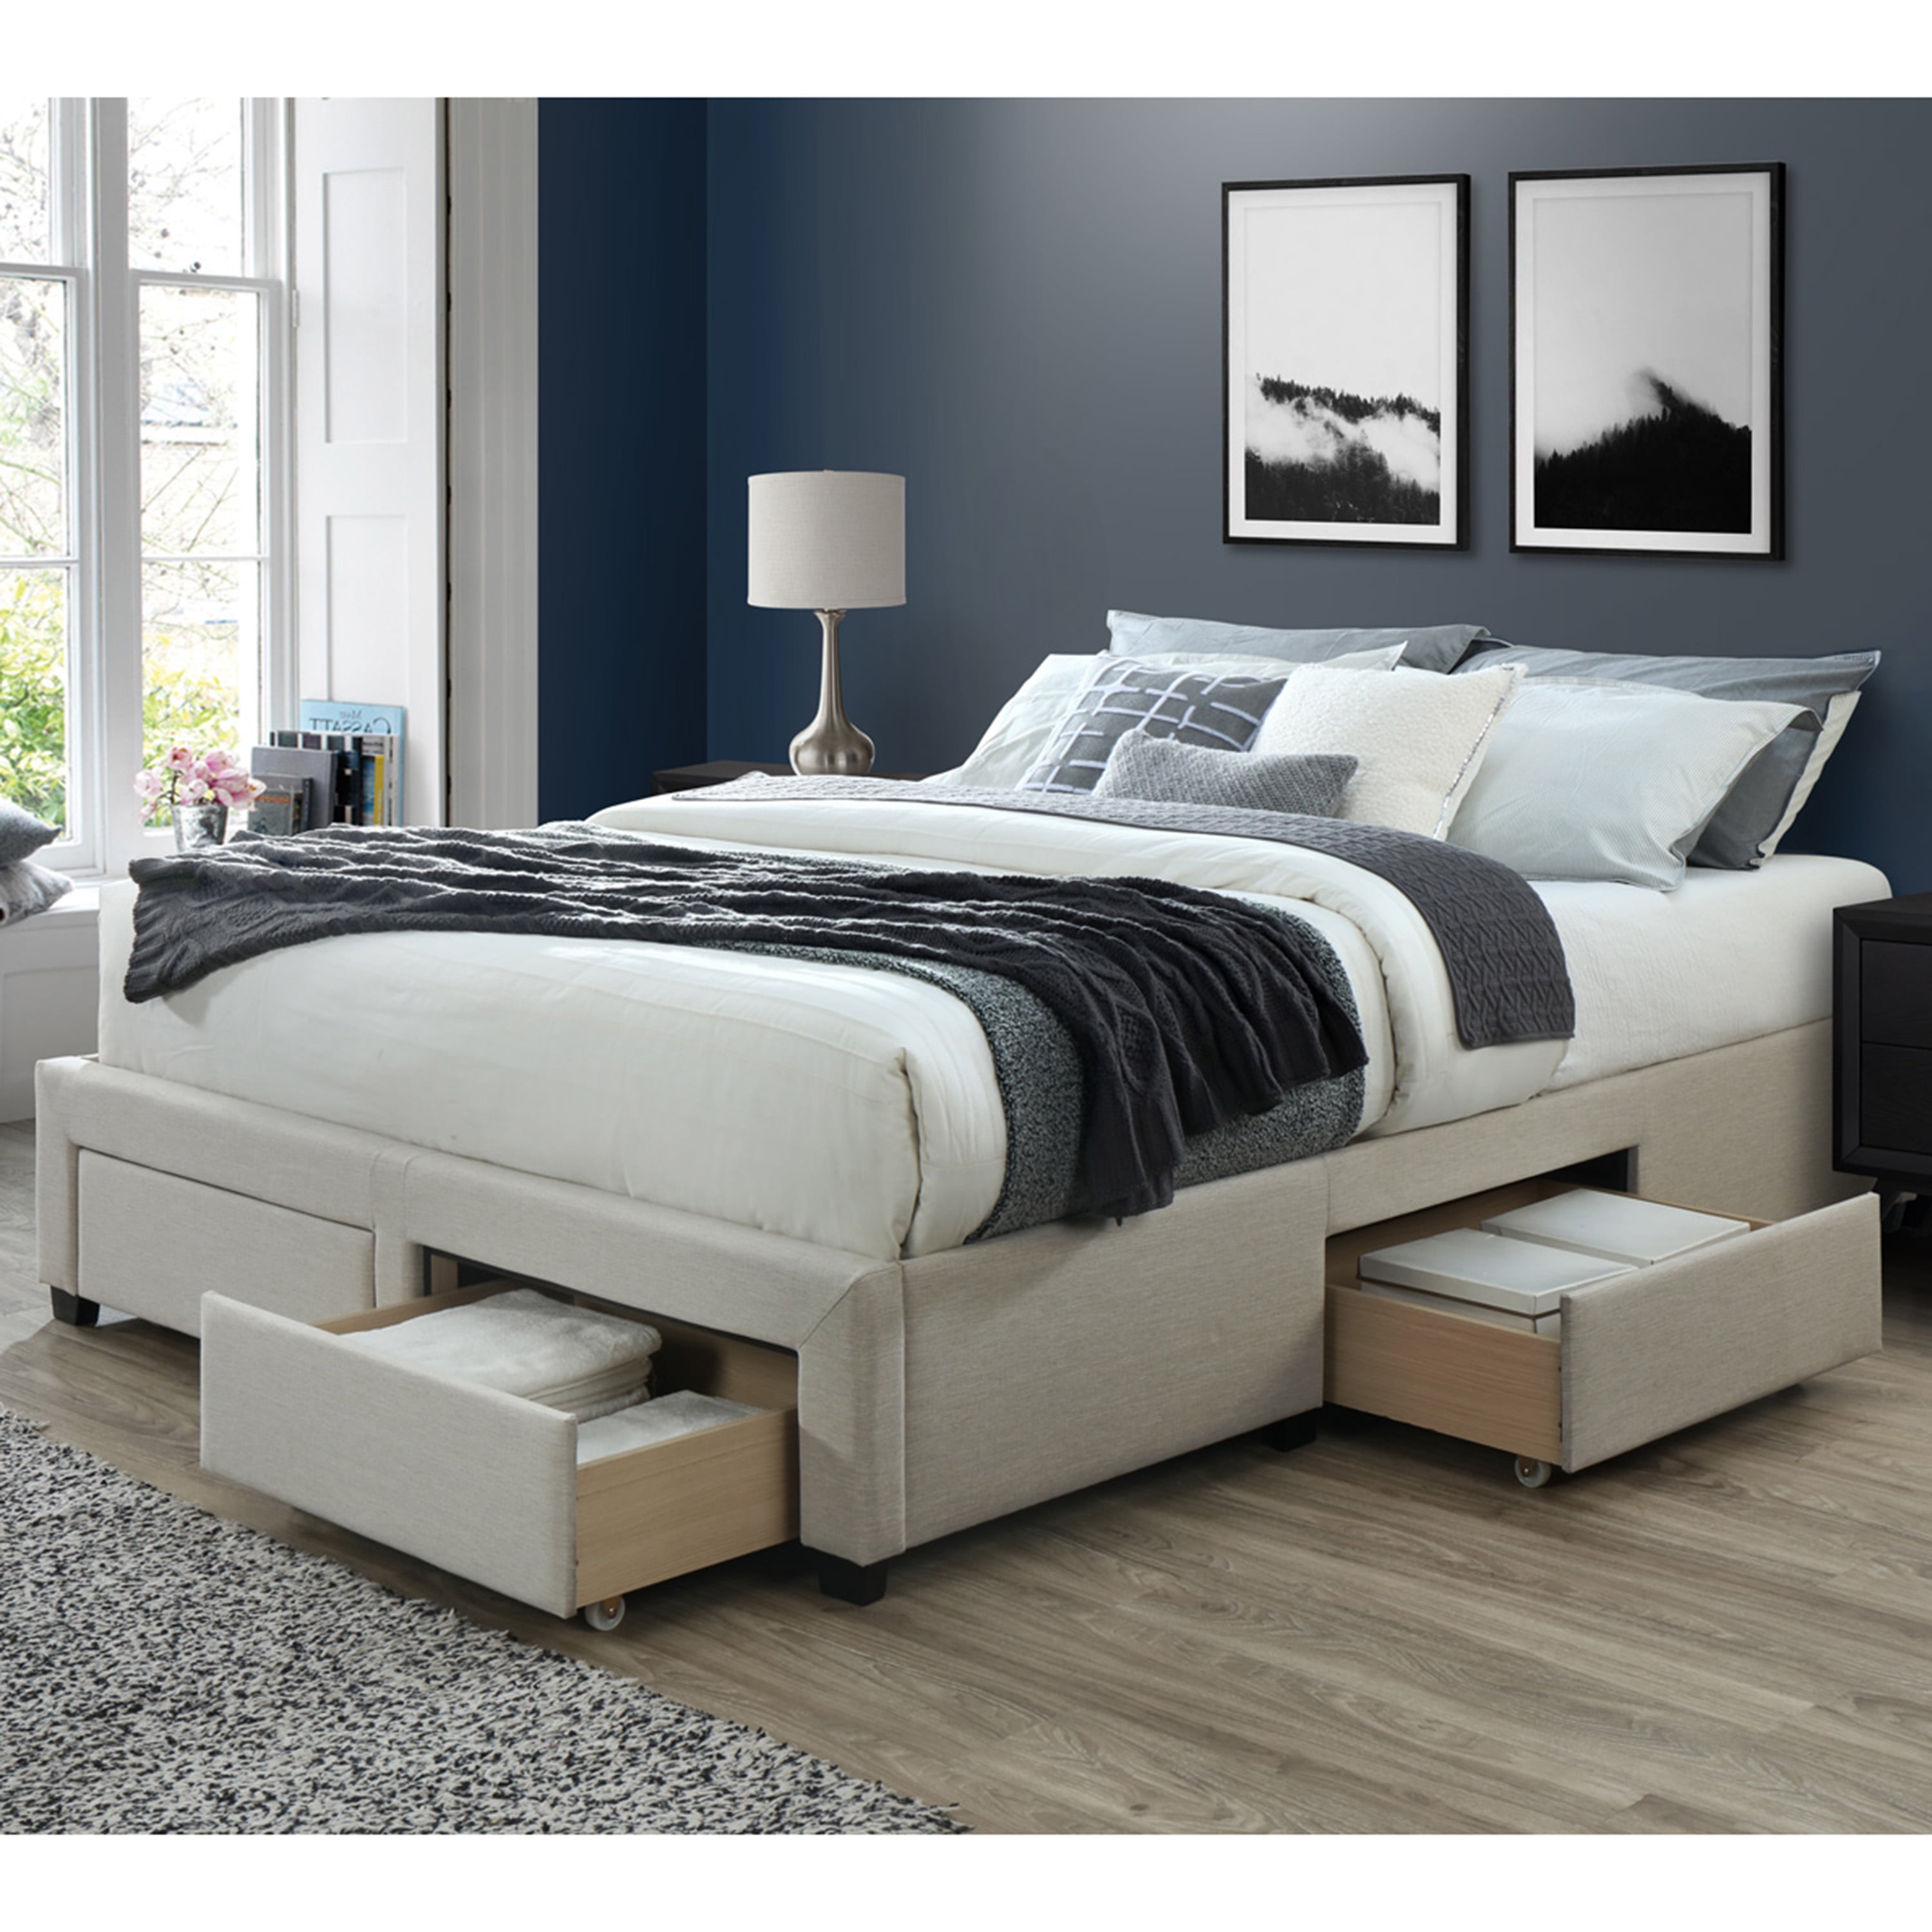 Buy Dg Casa Cosmo Upholstered Platform Bed Frame Base With Storage